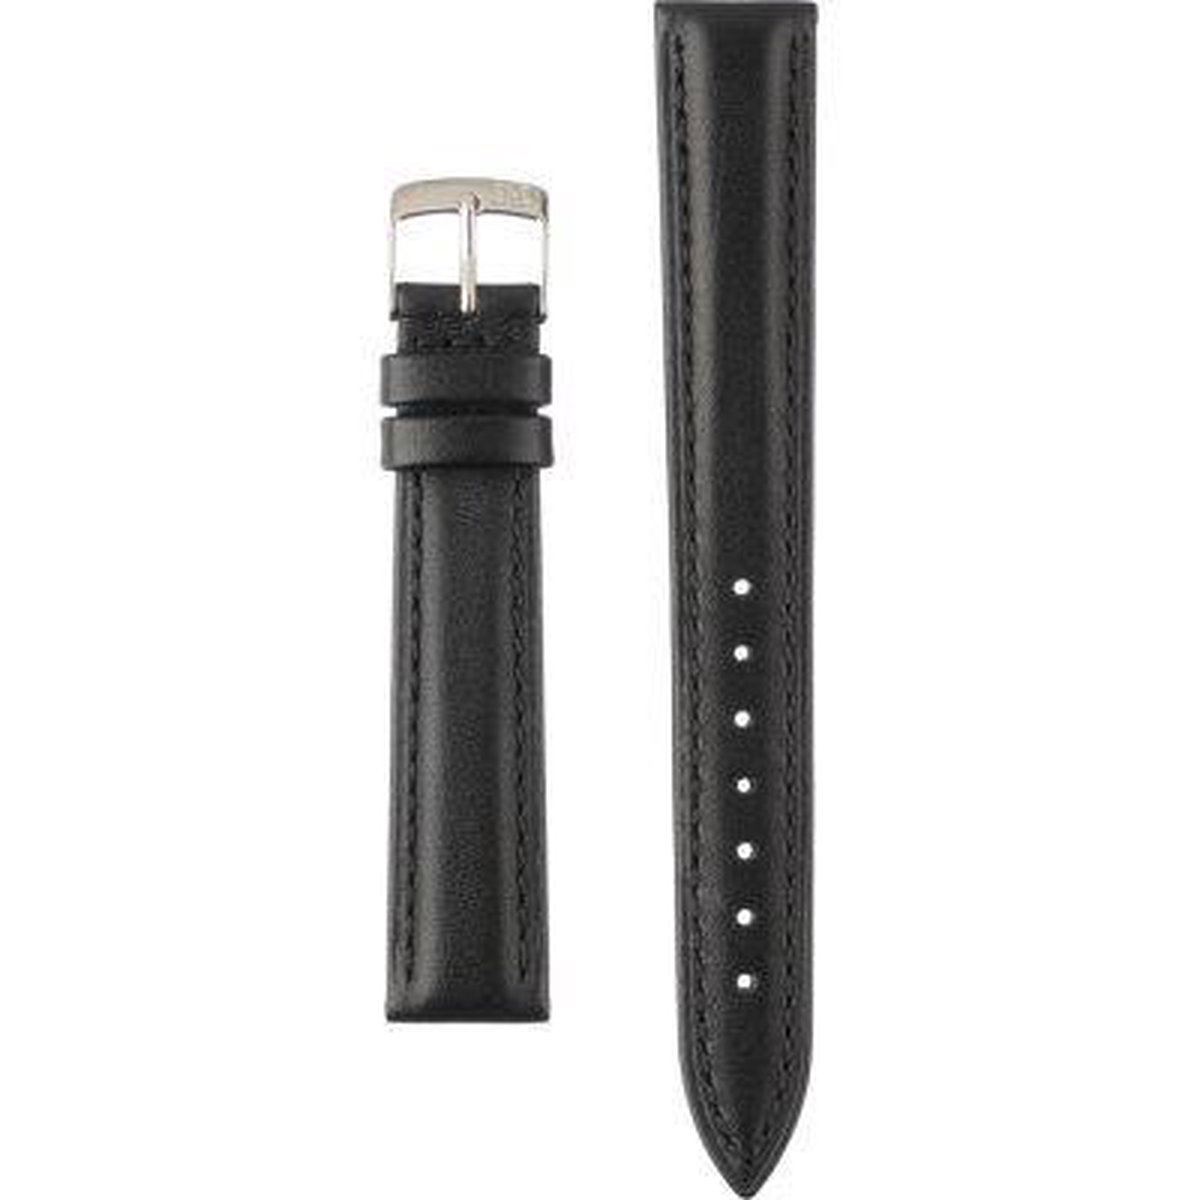 Morellato Horlogebandje - Morellato horlogeband X3935 Musa - leer - Zwart - bandbreedte 16.00 mm